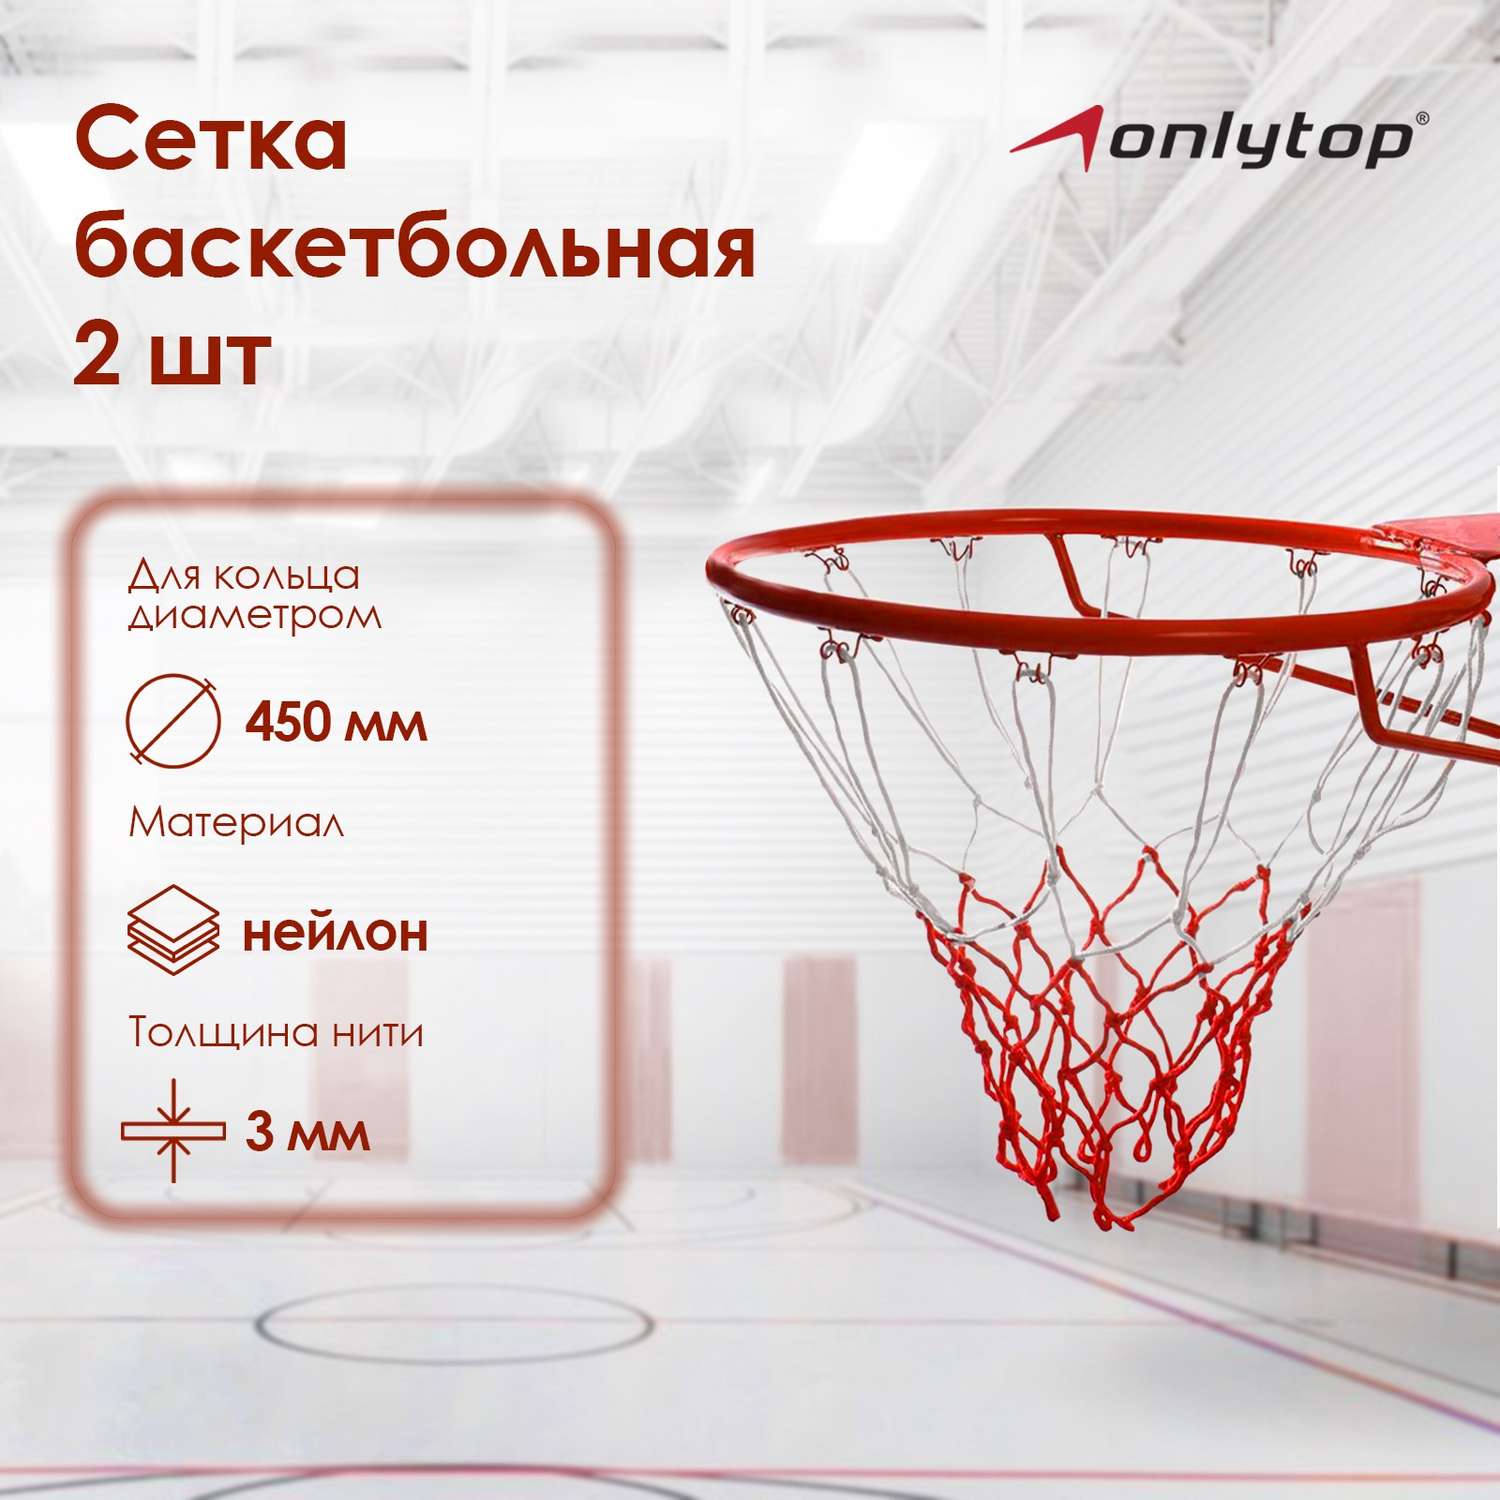 Сетка ONLITOP баскетбольная. 50 см. нить 3 мм. двухцветная. (2 шт) - фото 1